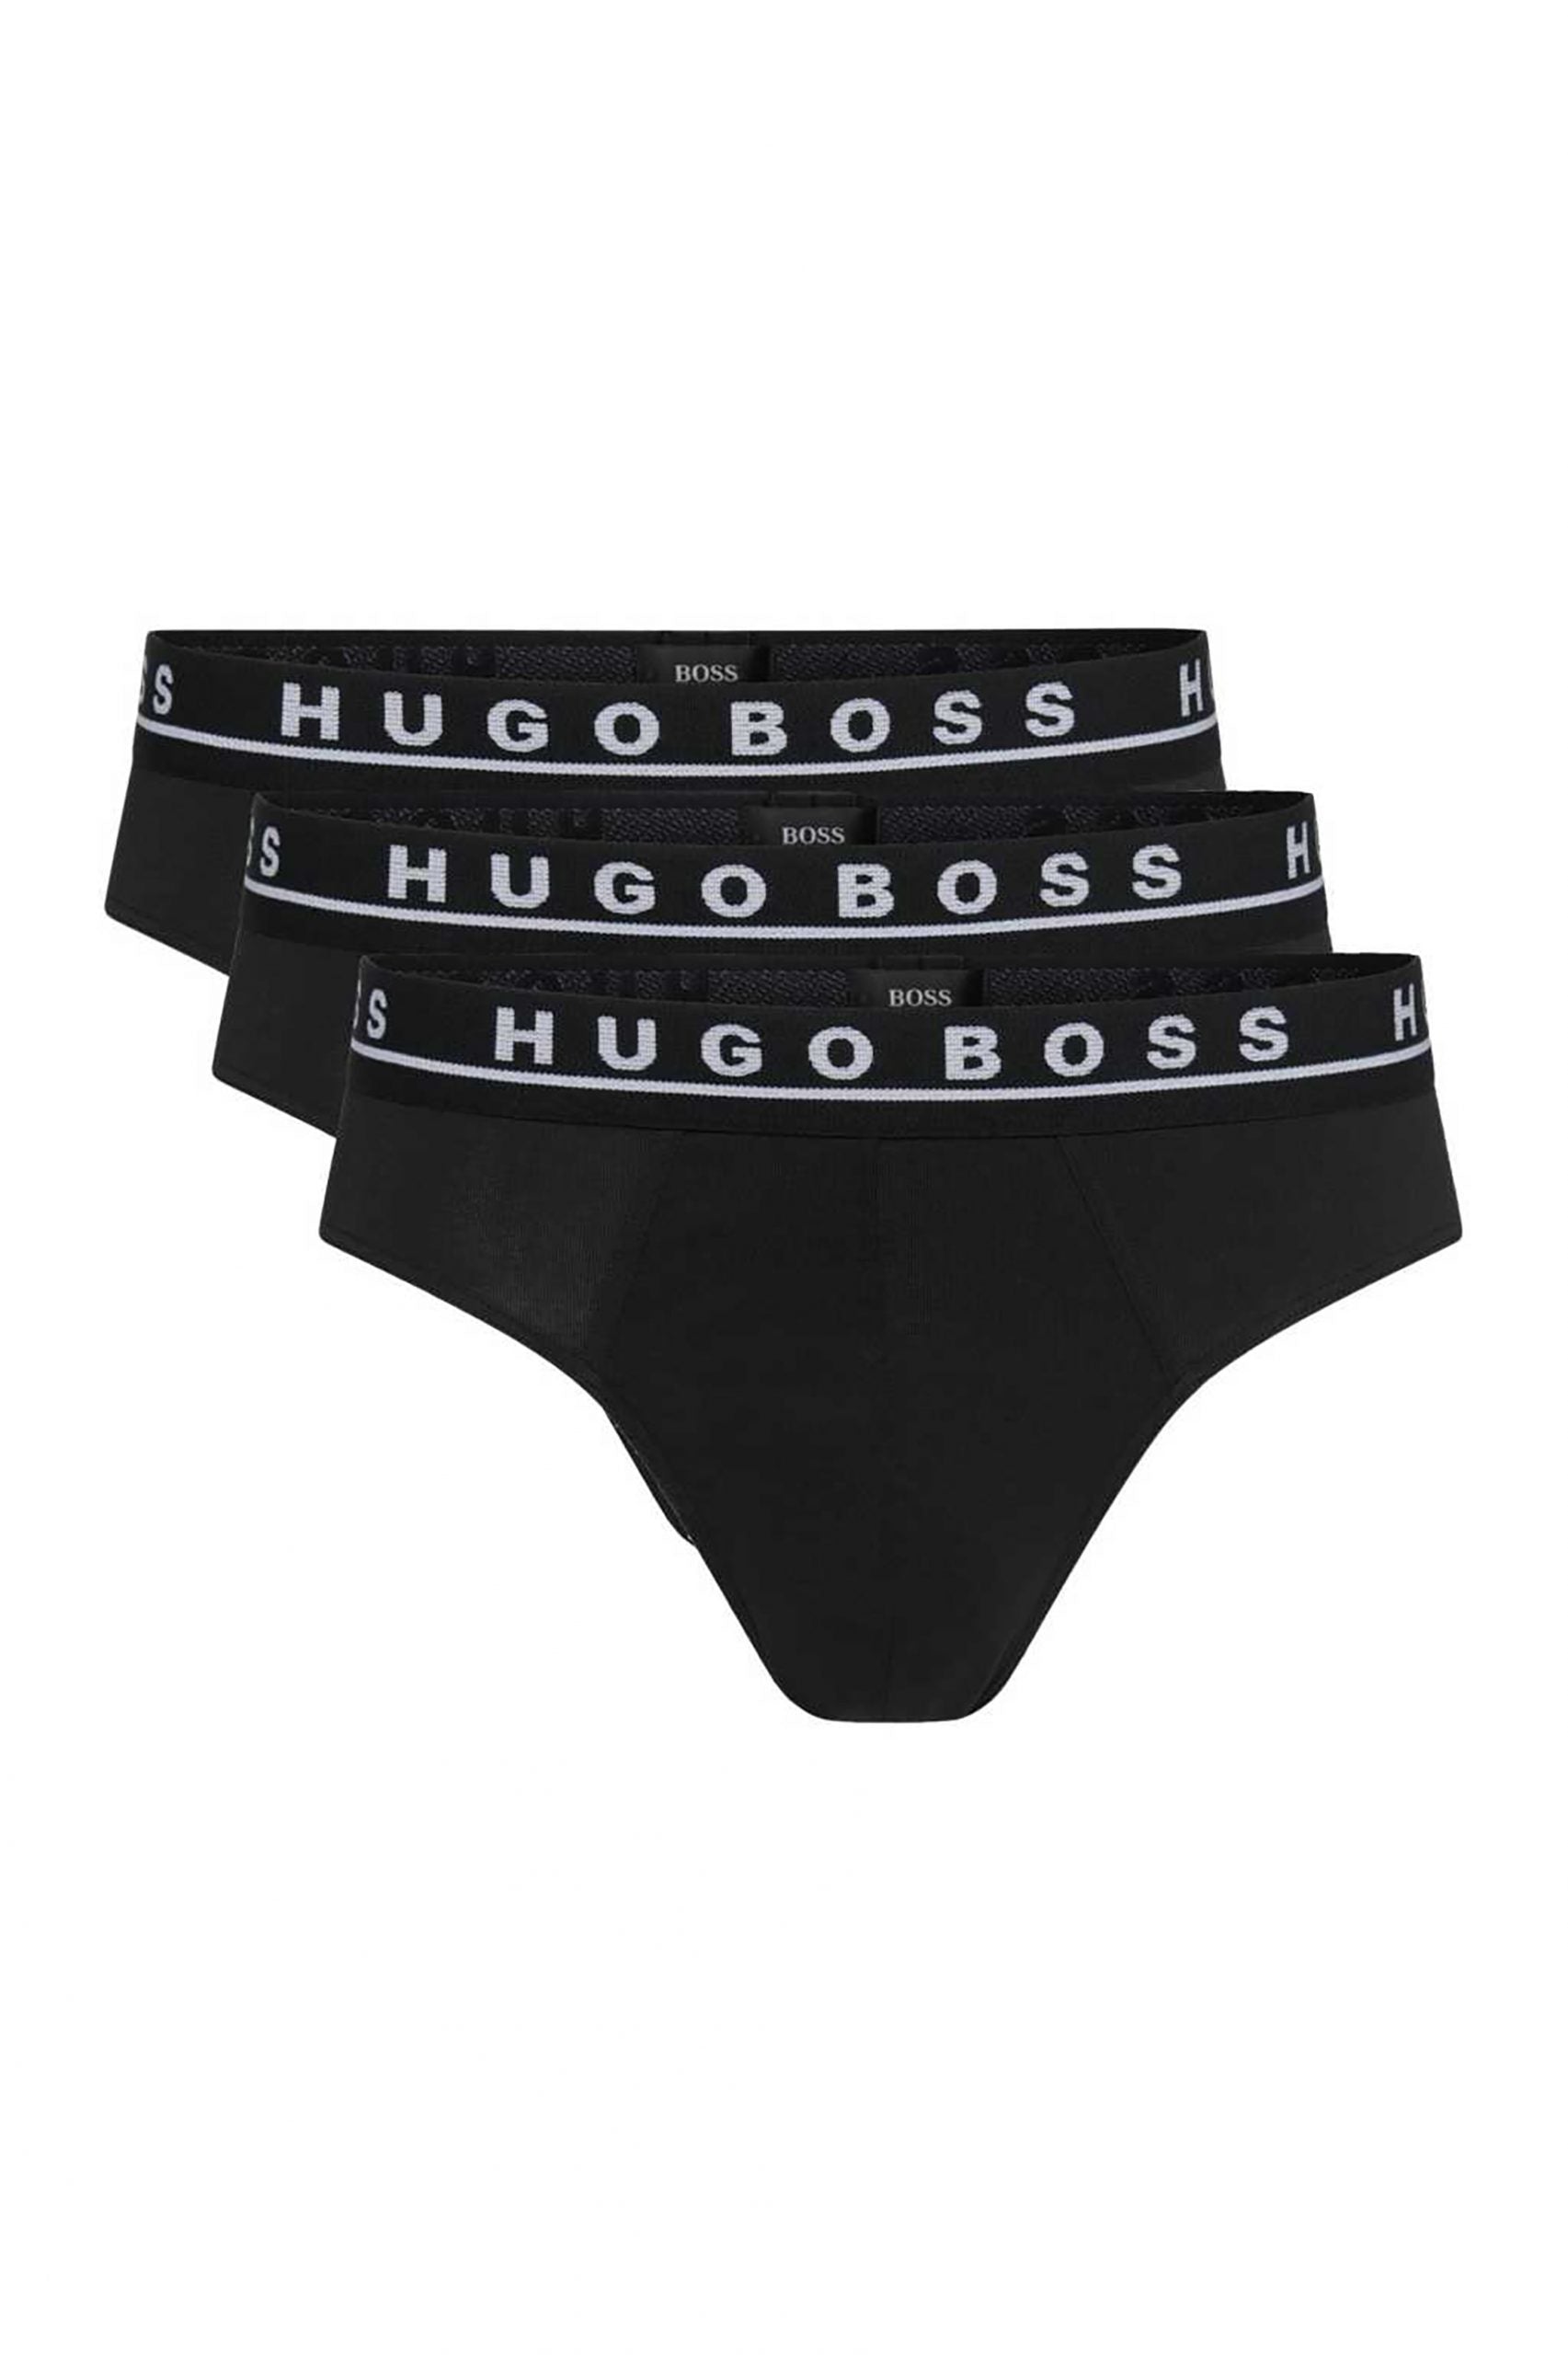 Hugo Boss Mens 3pk Briefs - Black